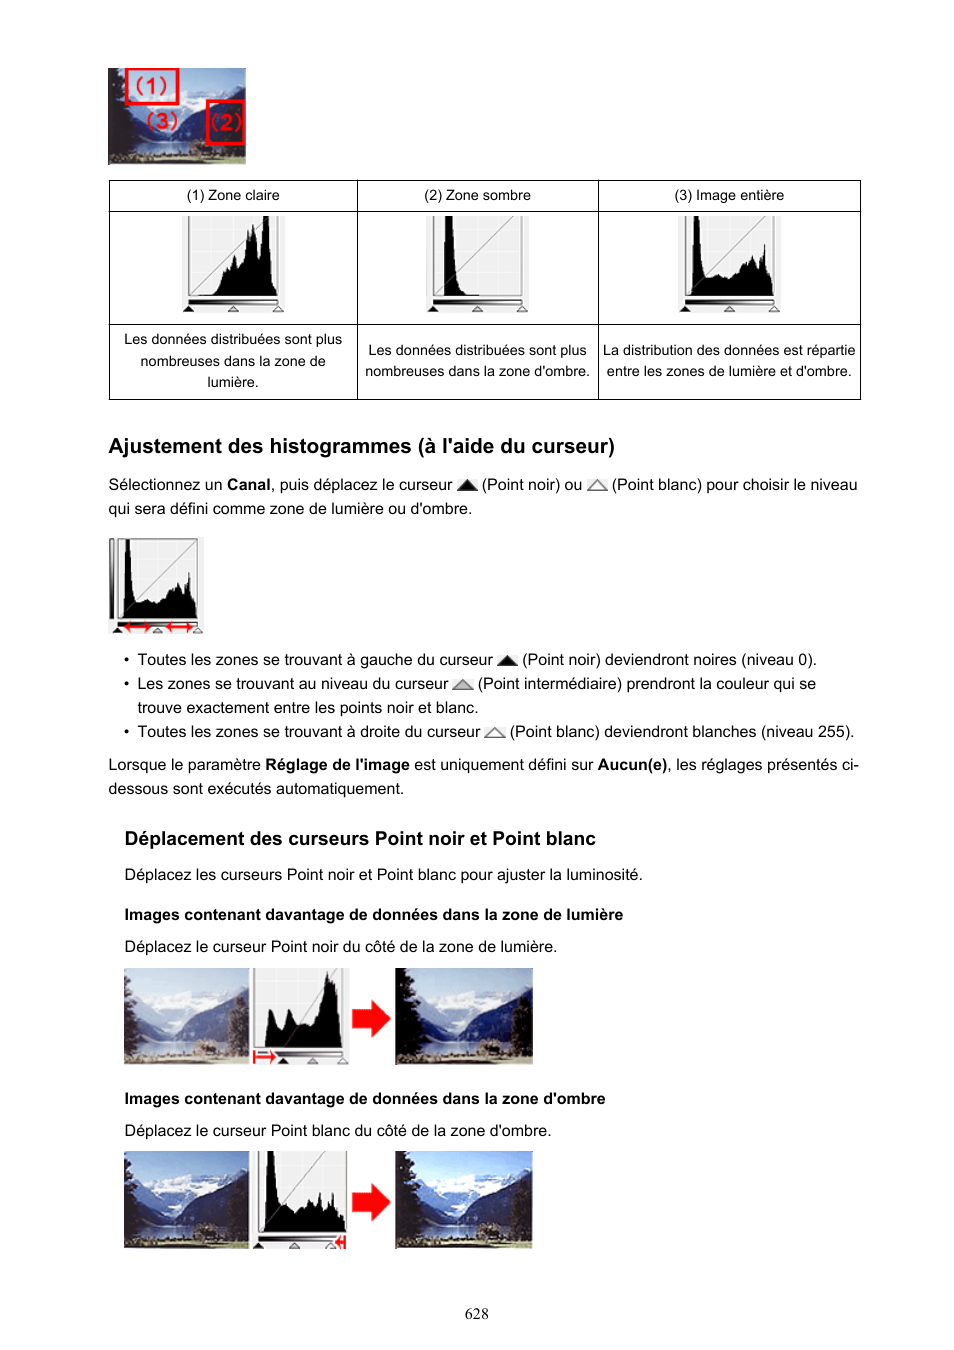 Ajustement des histogrammes (à l'aide du curseur) | Canon PIXMA MX535 Manuel d'utilisation | Page 628 / 1066